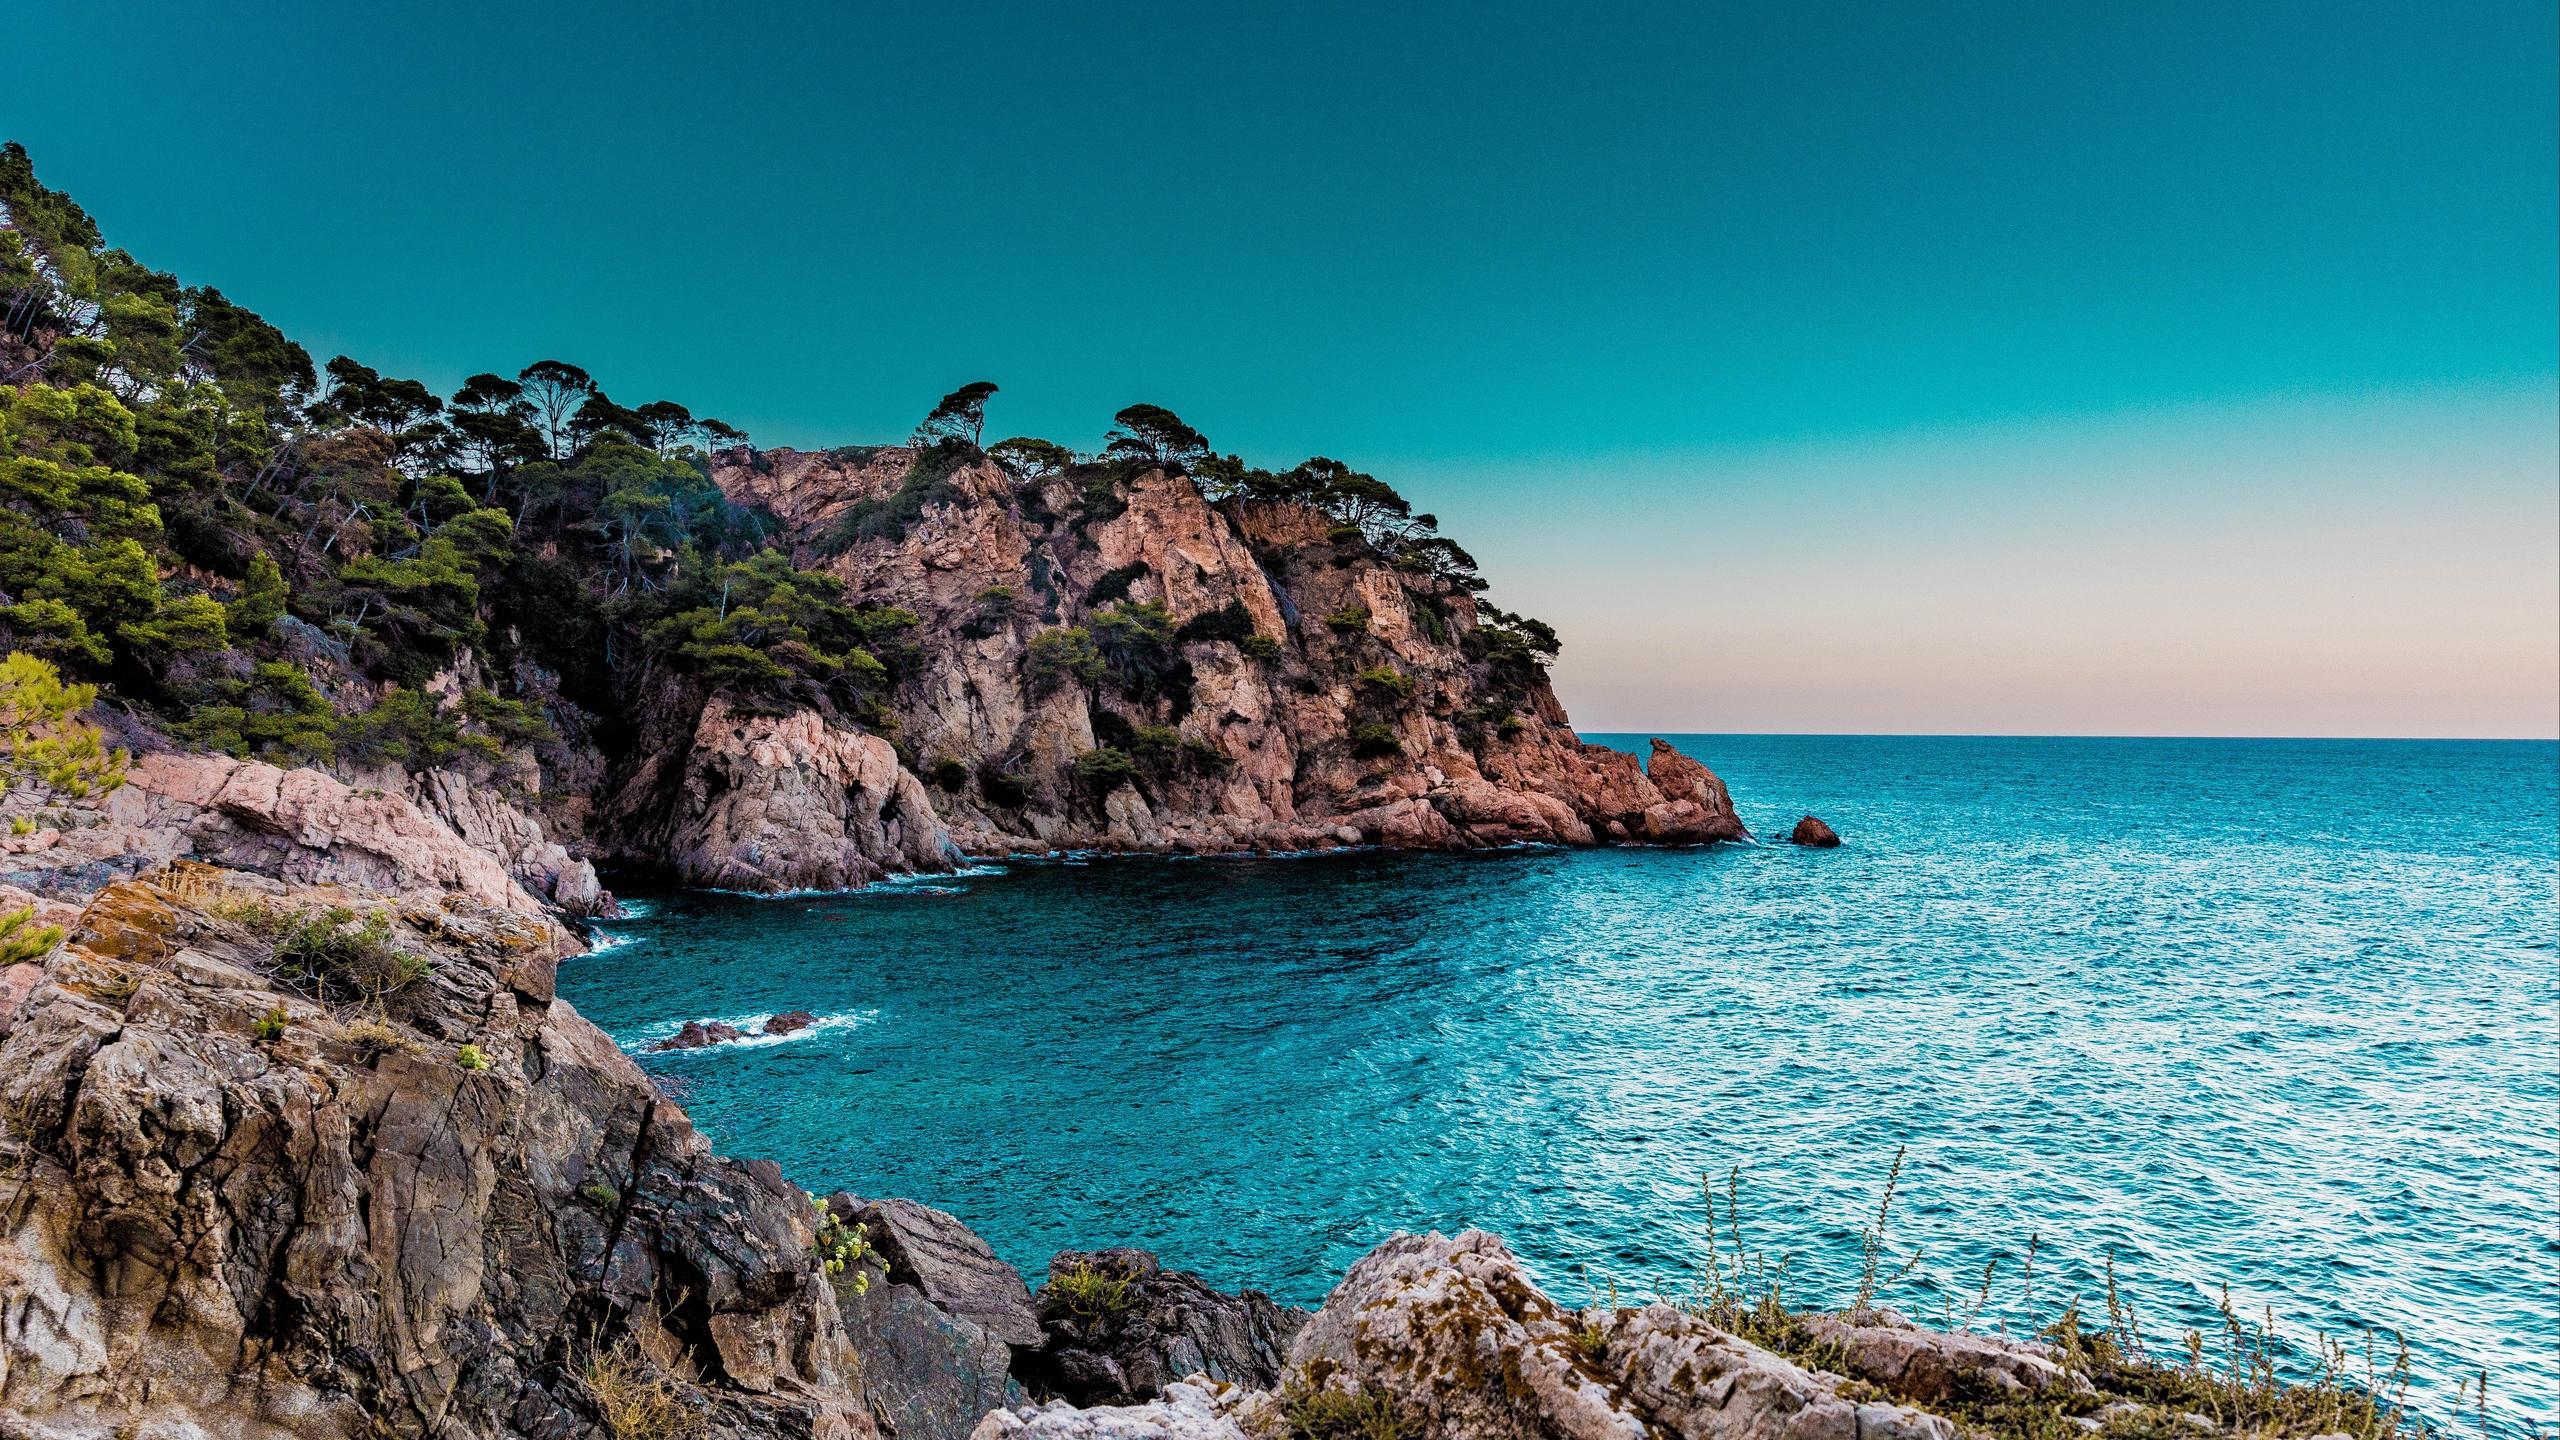 Download wallpaper 2560x1440 cliffs, sea, shore widescreen